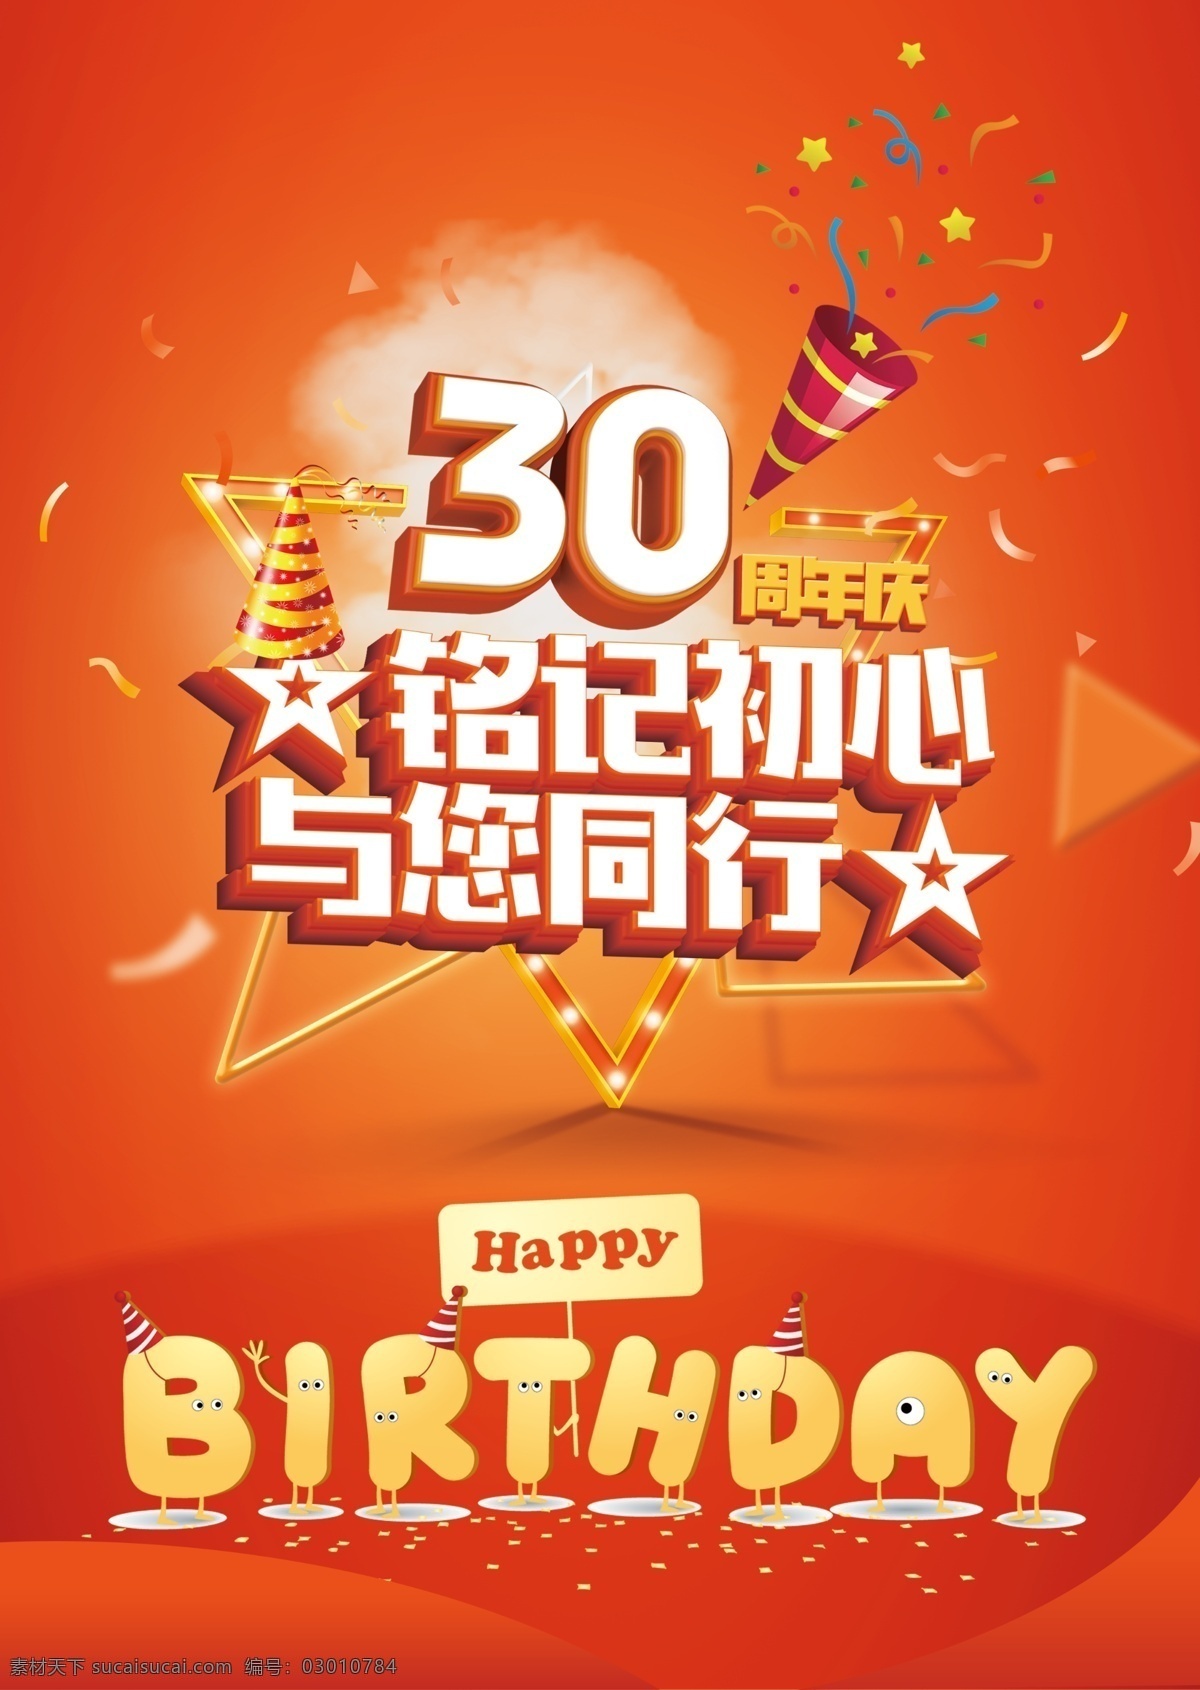 周年庆海报 30周年 铭记初心 与您同行 喜庆 橙色背景 橙色 主kv 生日快乐 分层